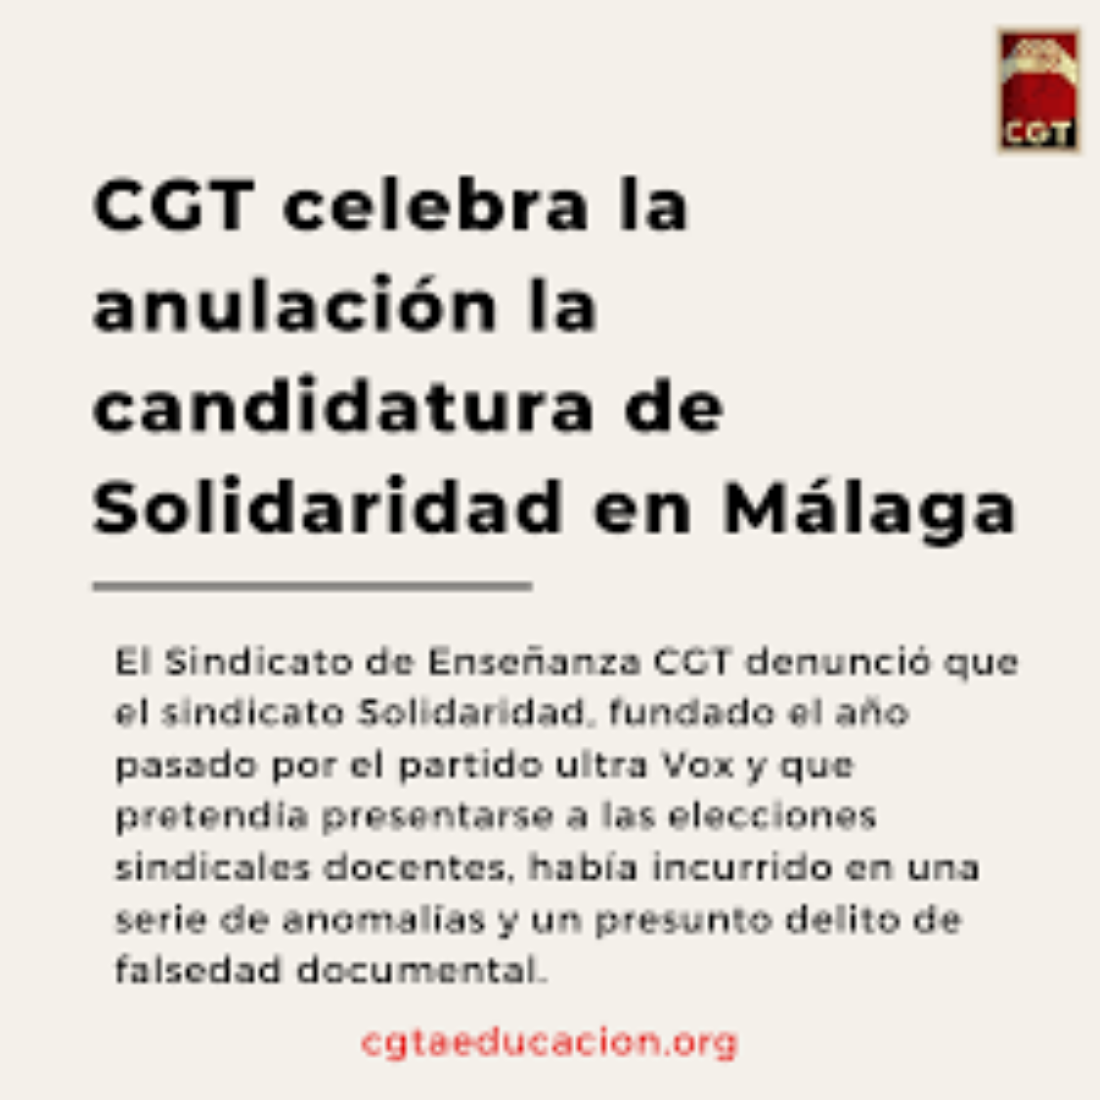 CGT celebra la anulación la candidatura de Solidaridad en Málaga